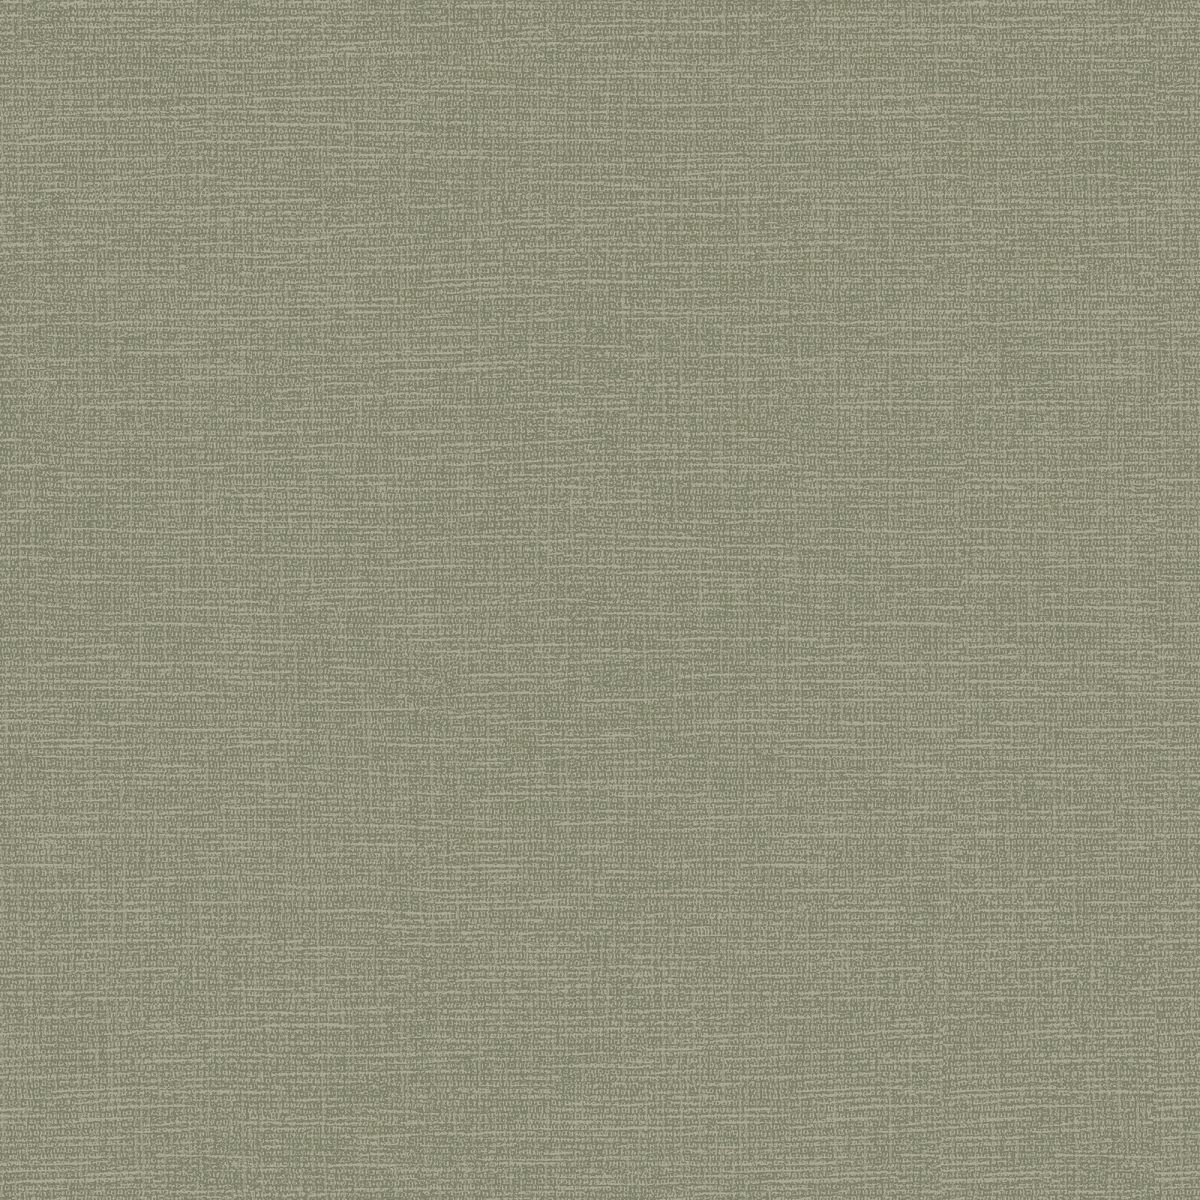 904304 Canvas Non-woven Wallpaper, Green